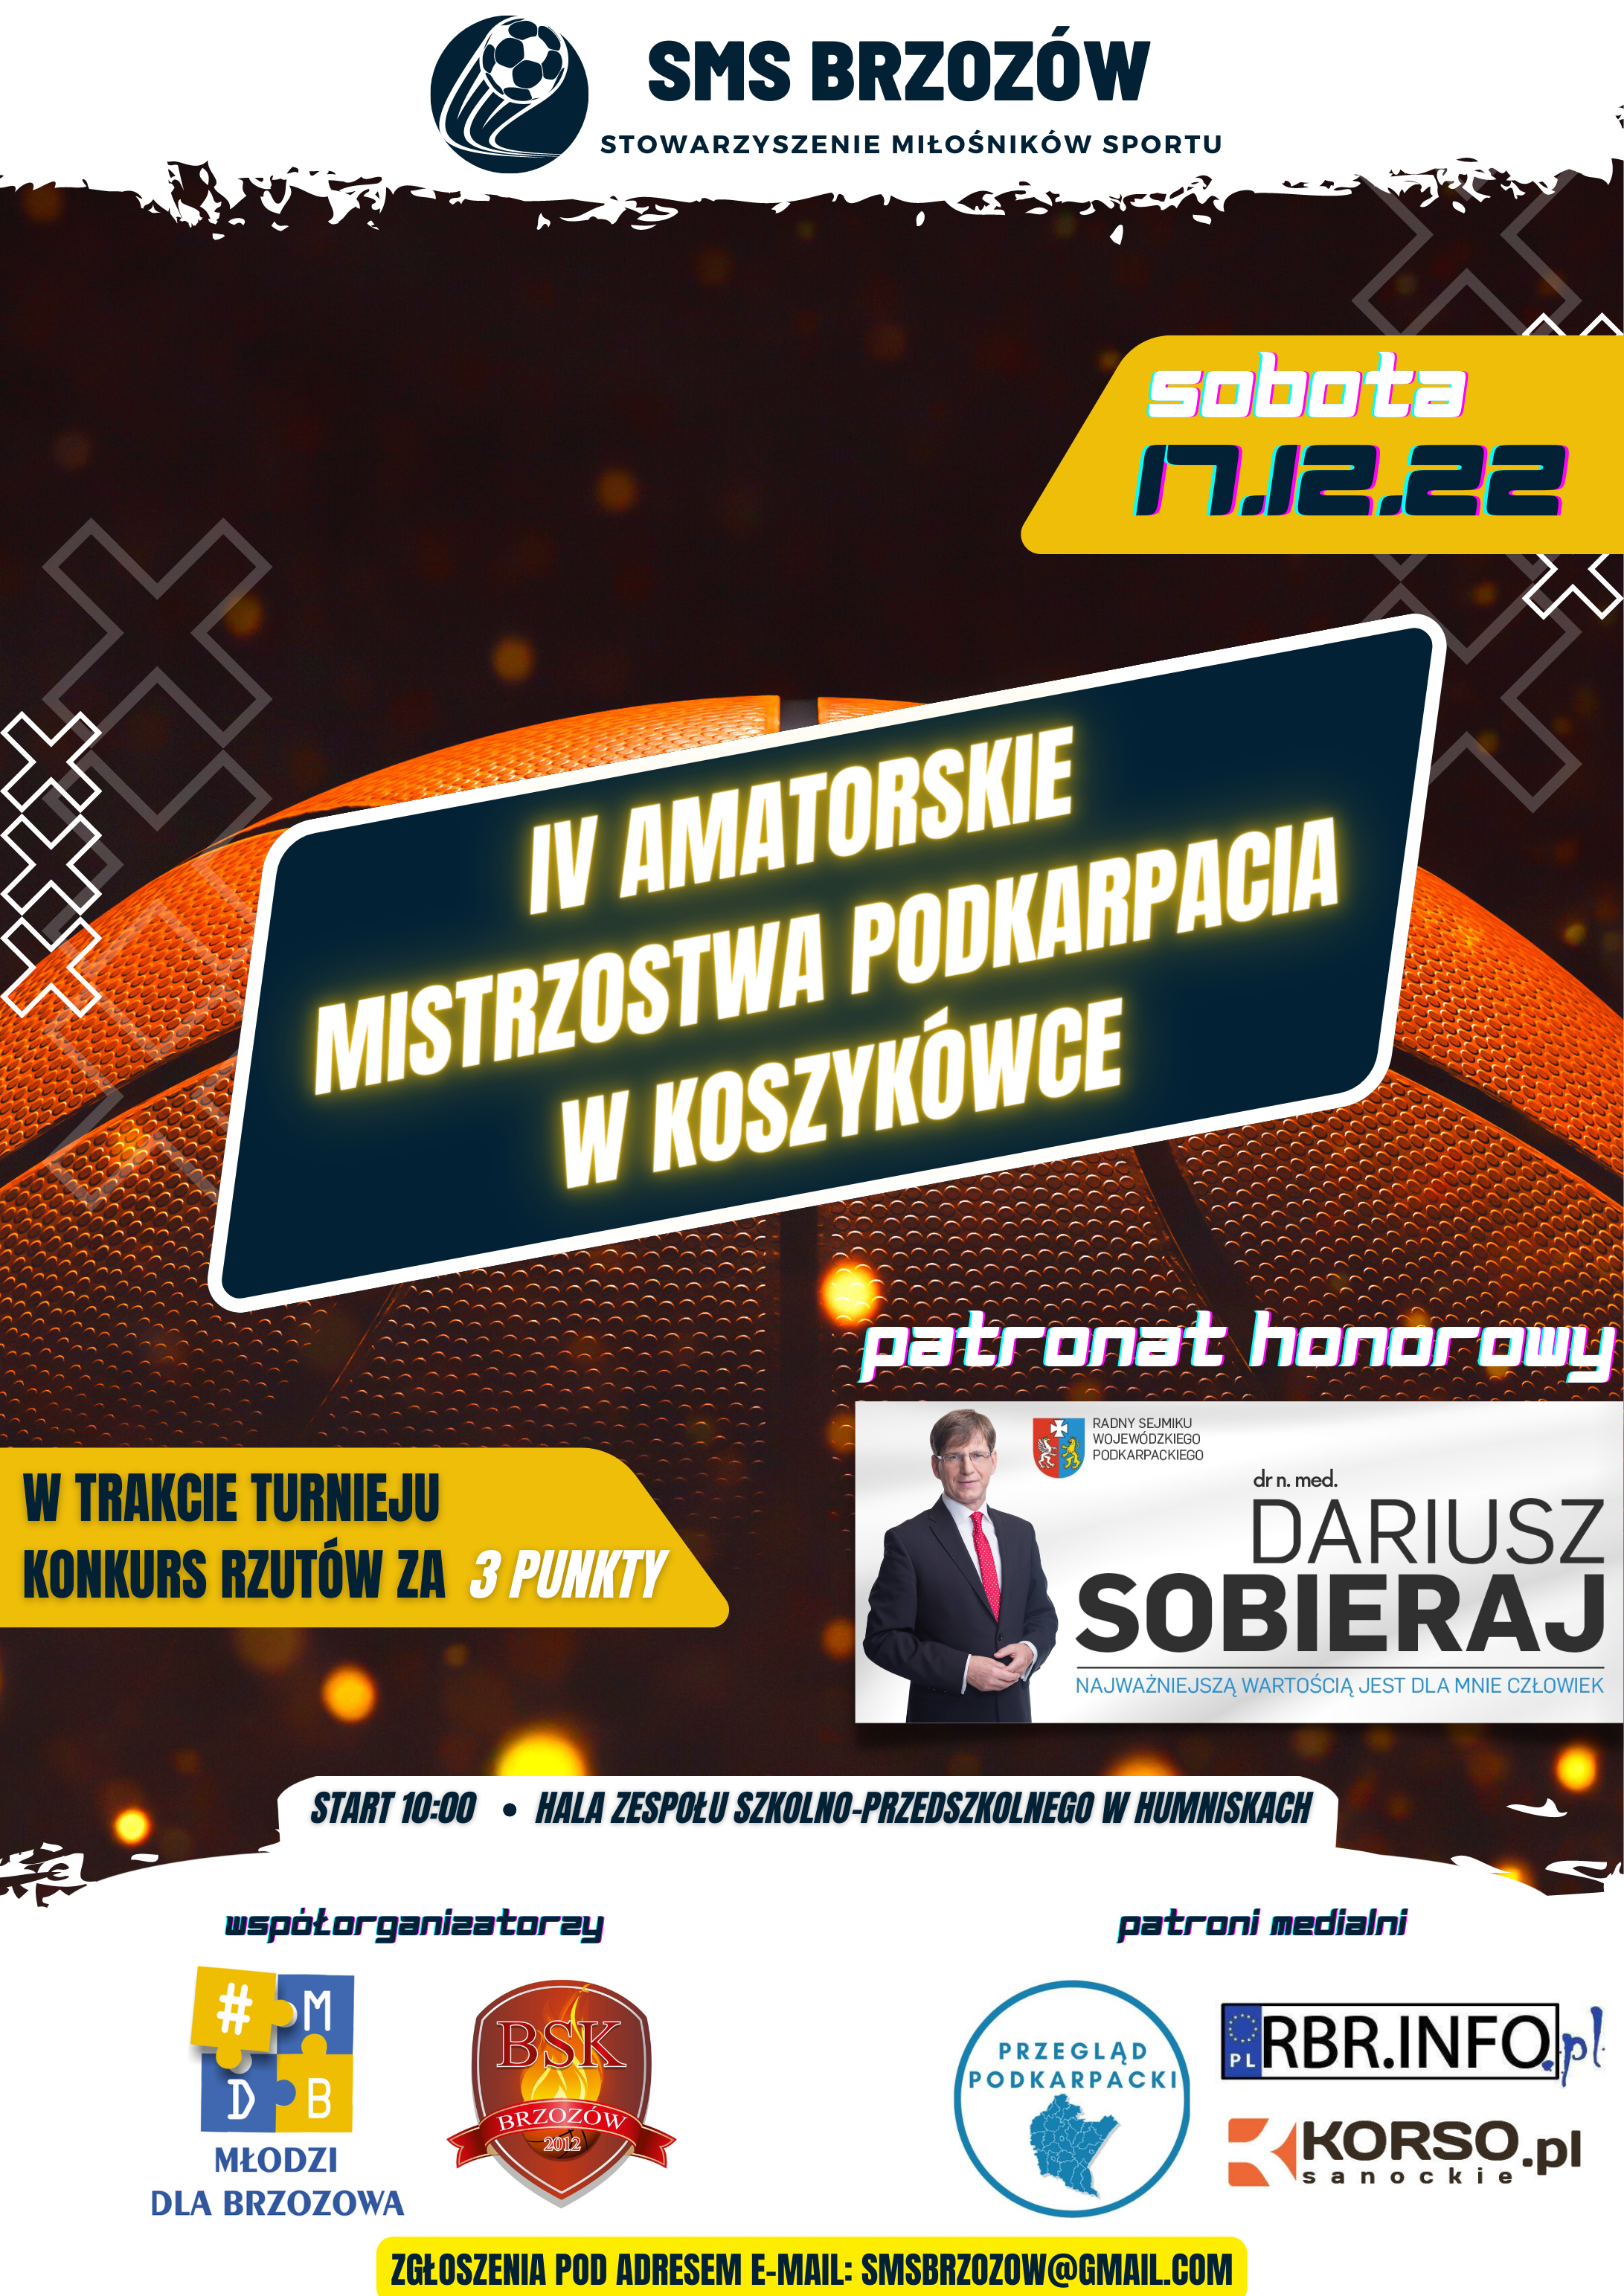 Amatorskie Mistrzostwa Podkarpacia w Koszykówce powracają do Brzozowa!